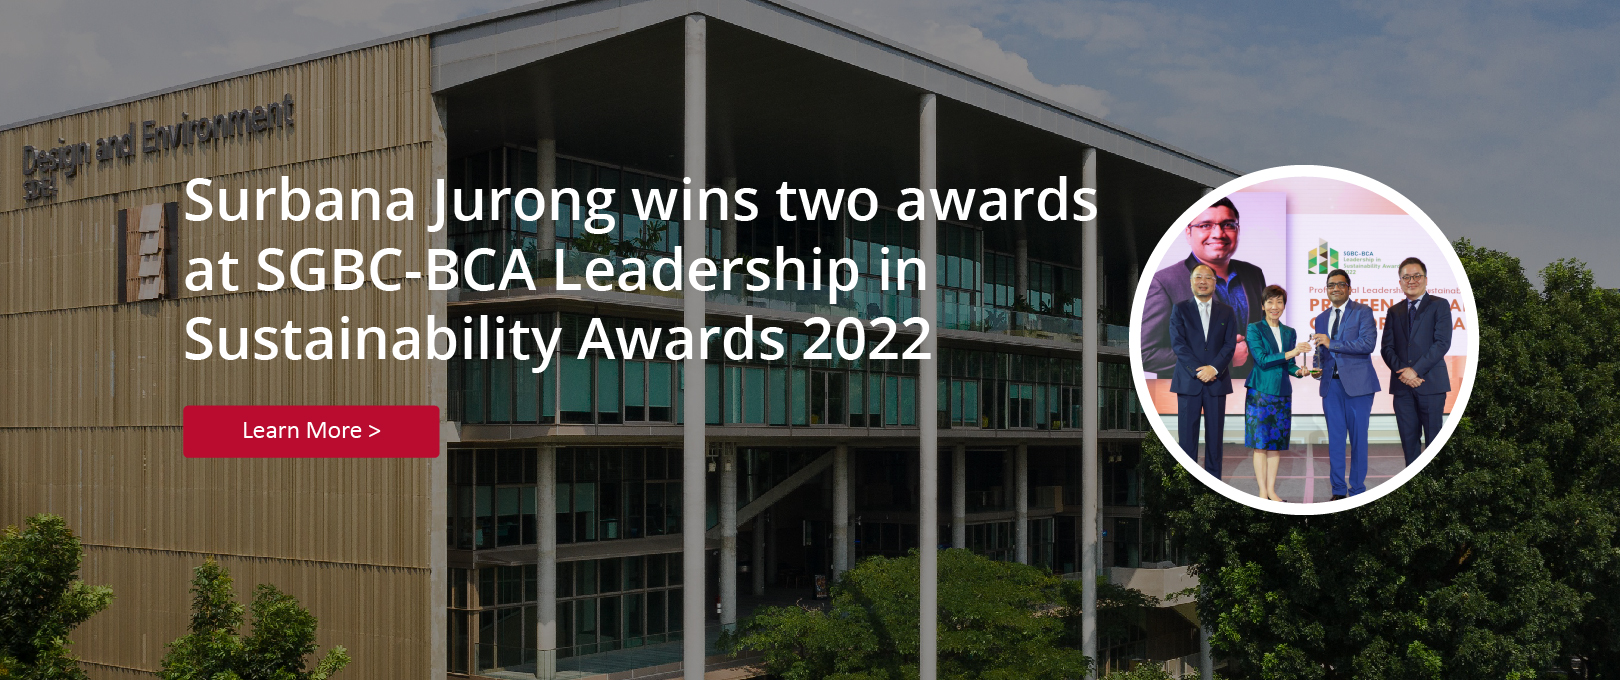 https://surbanajurong.com/resources/news/surbana-jurong-wins-two-awards-at-sgbc-bca-leadership-in-sustainability-awards-2022/